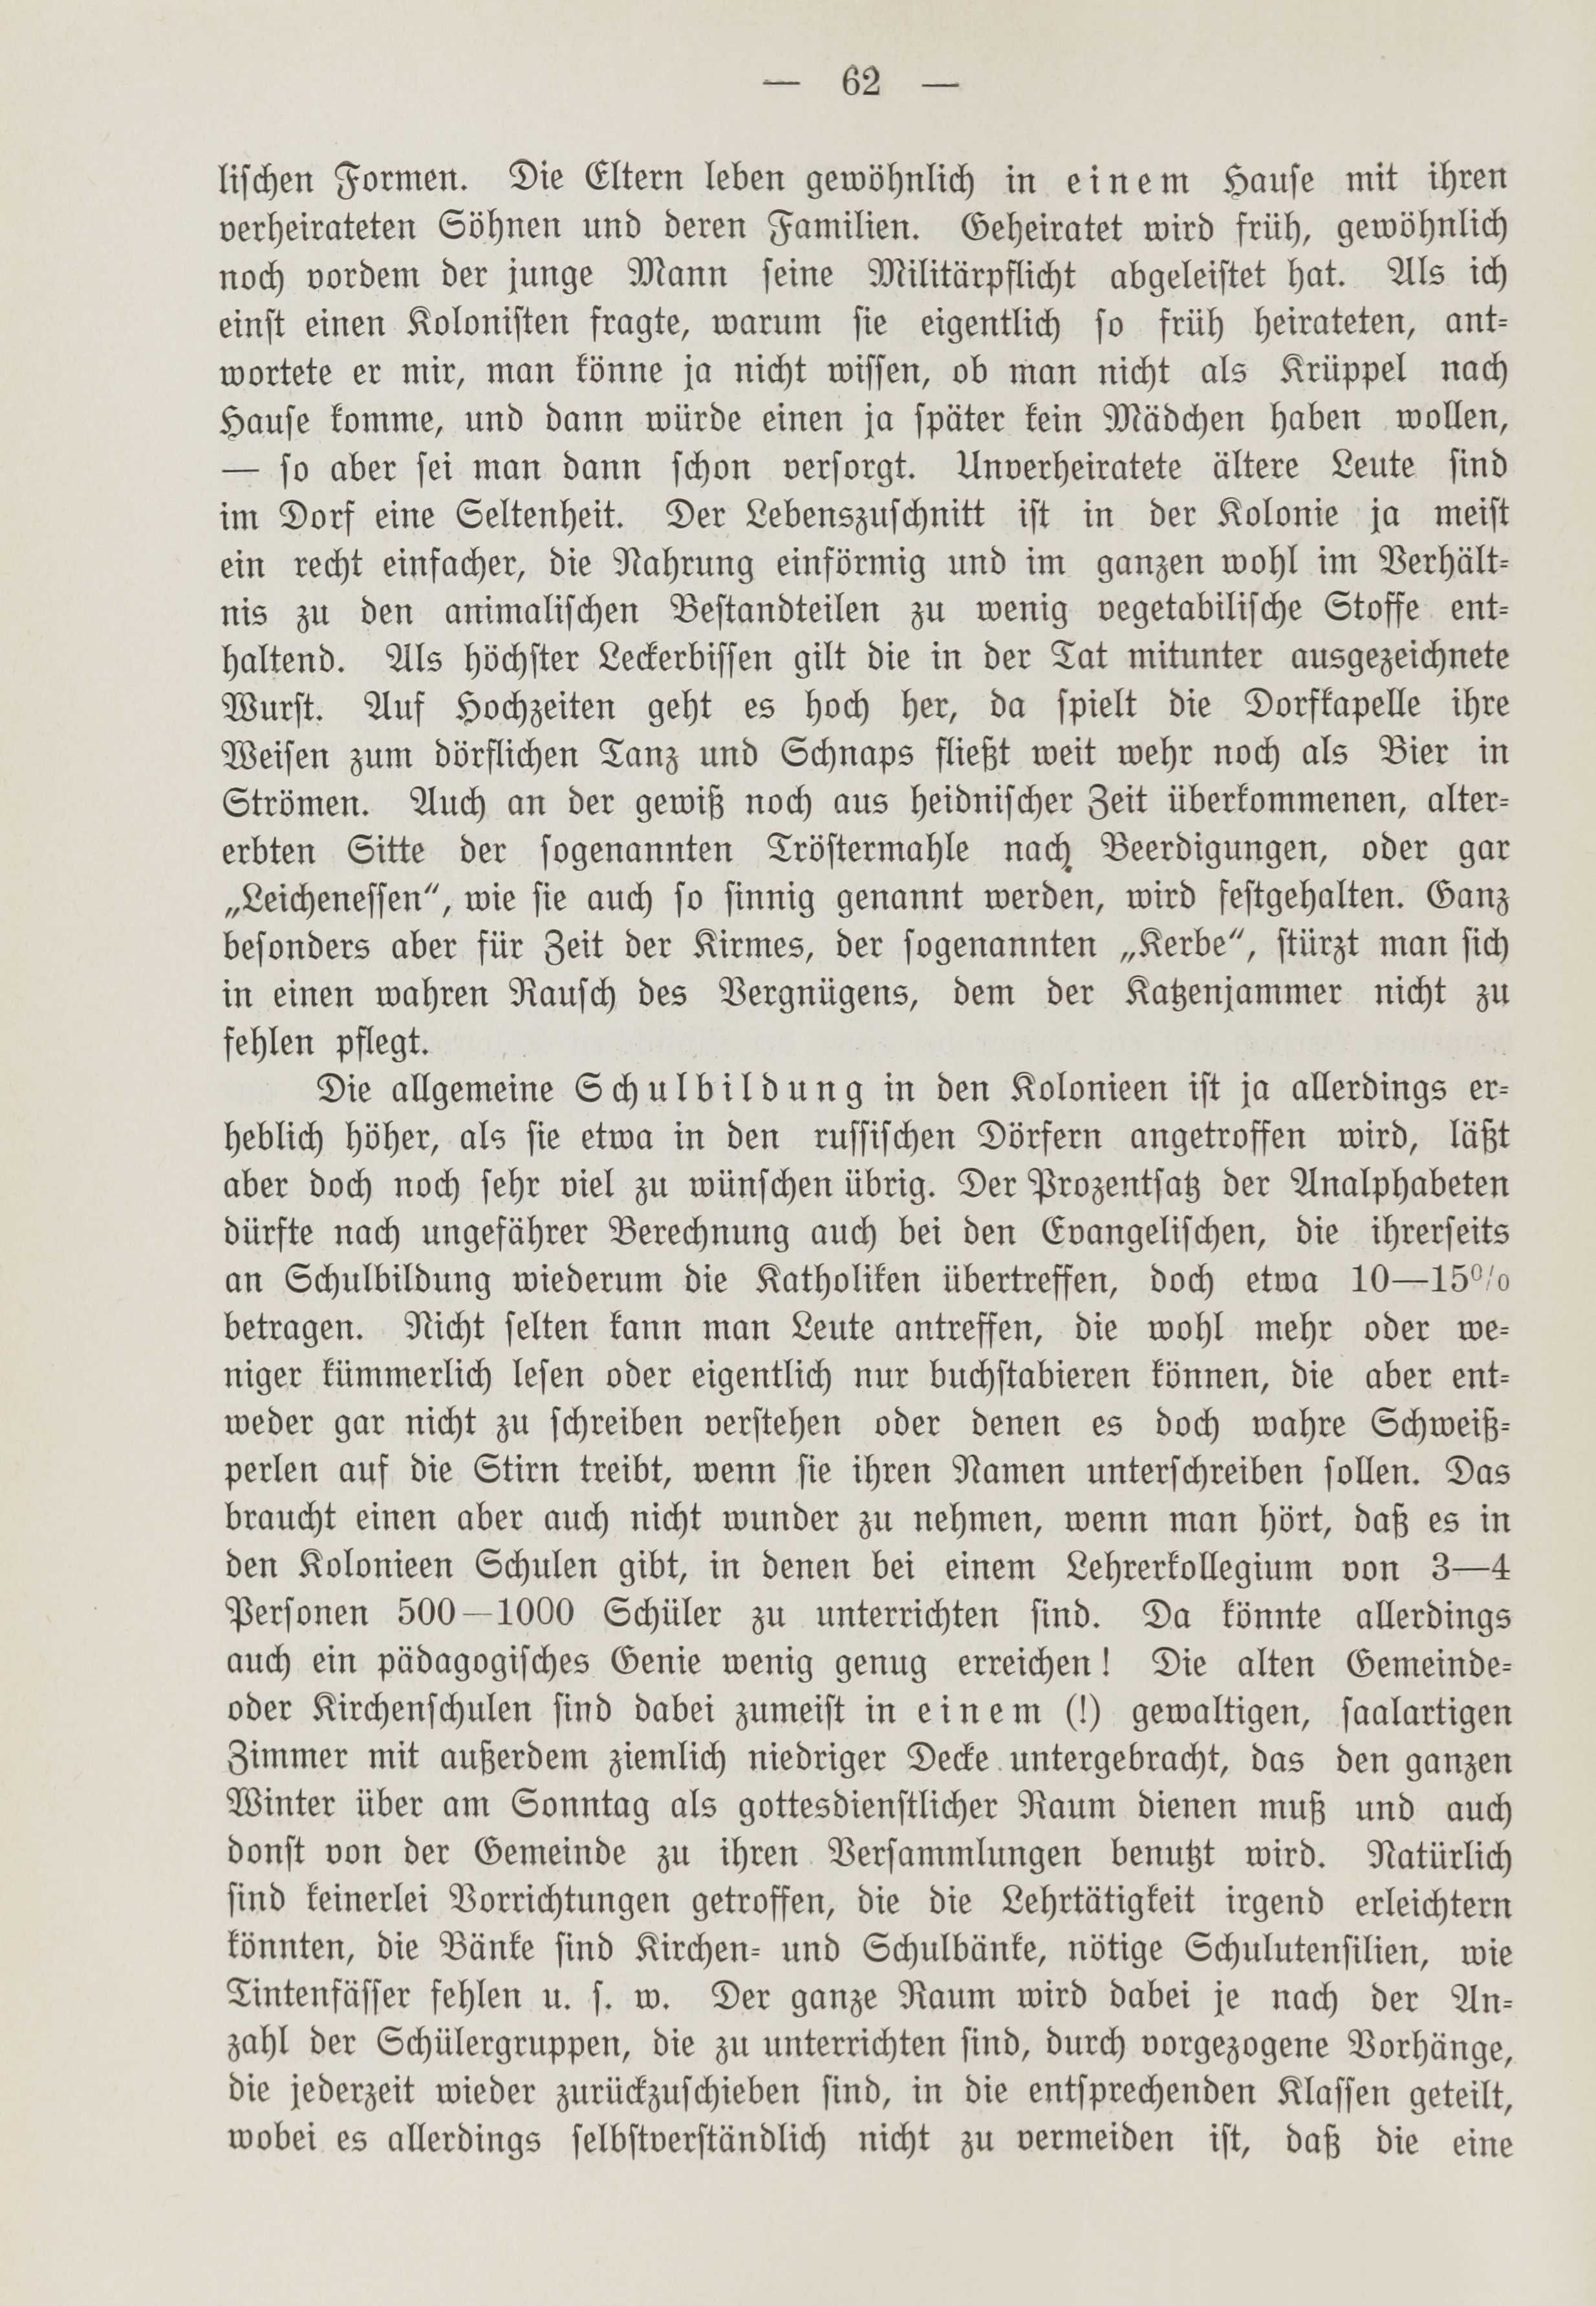 Deutsche Monatsschrift für Russland [1] (1912) | 69. (62) Haupttext